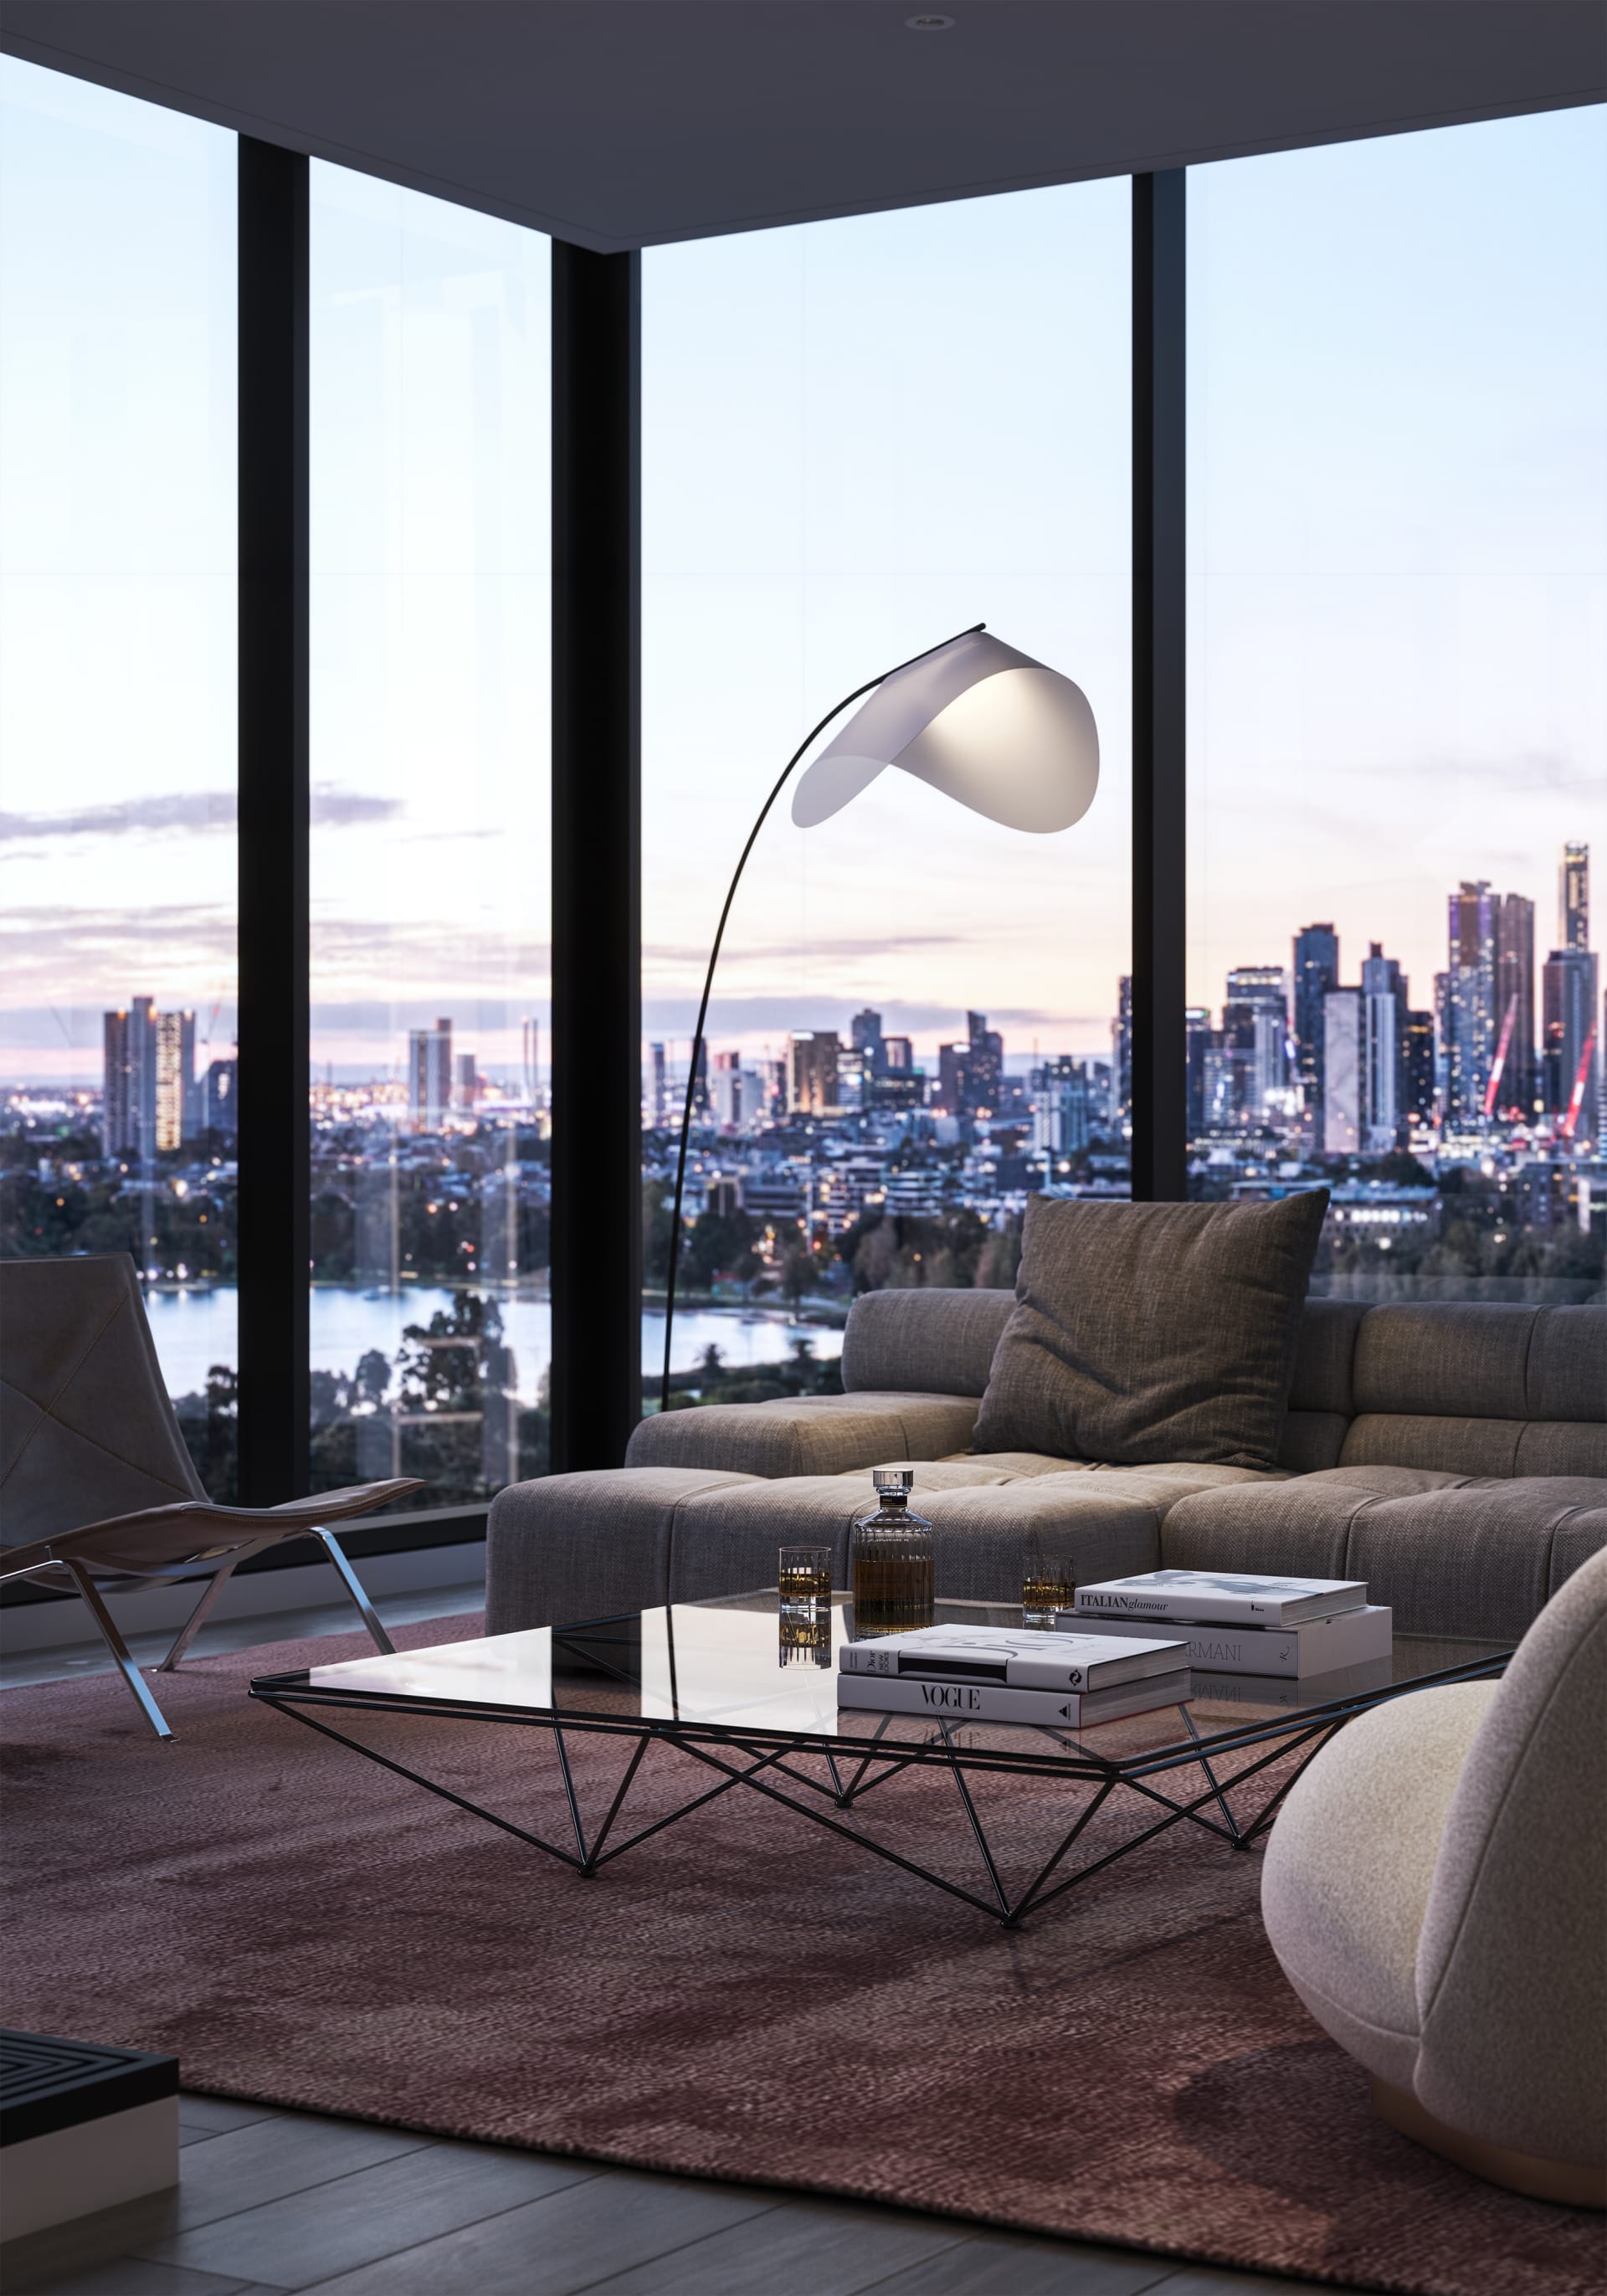 Samuel Property set to launch design-driven Melbourne apartments, Louise 